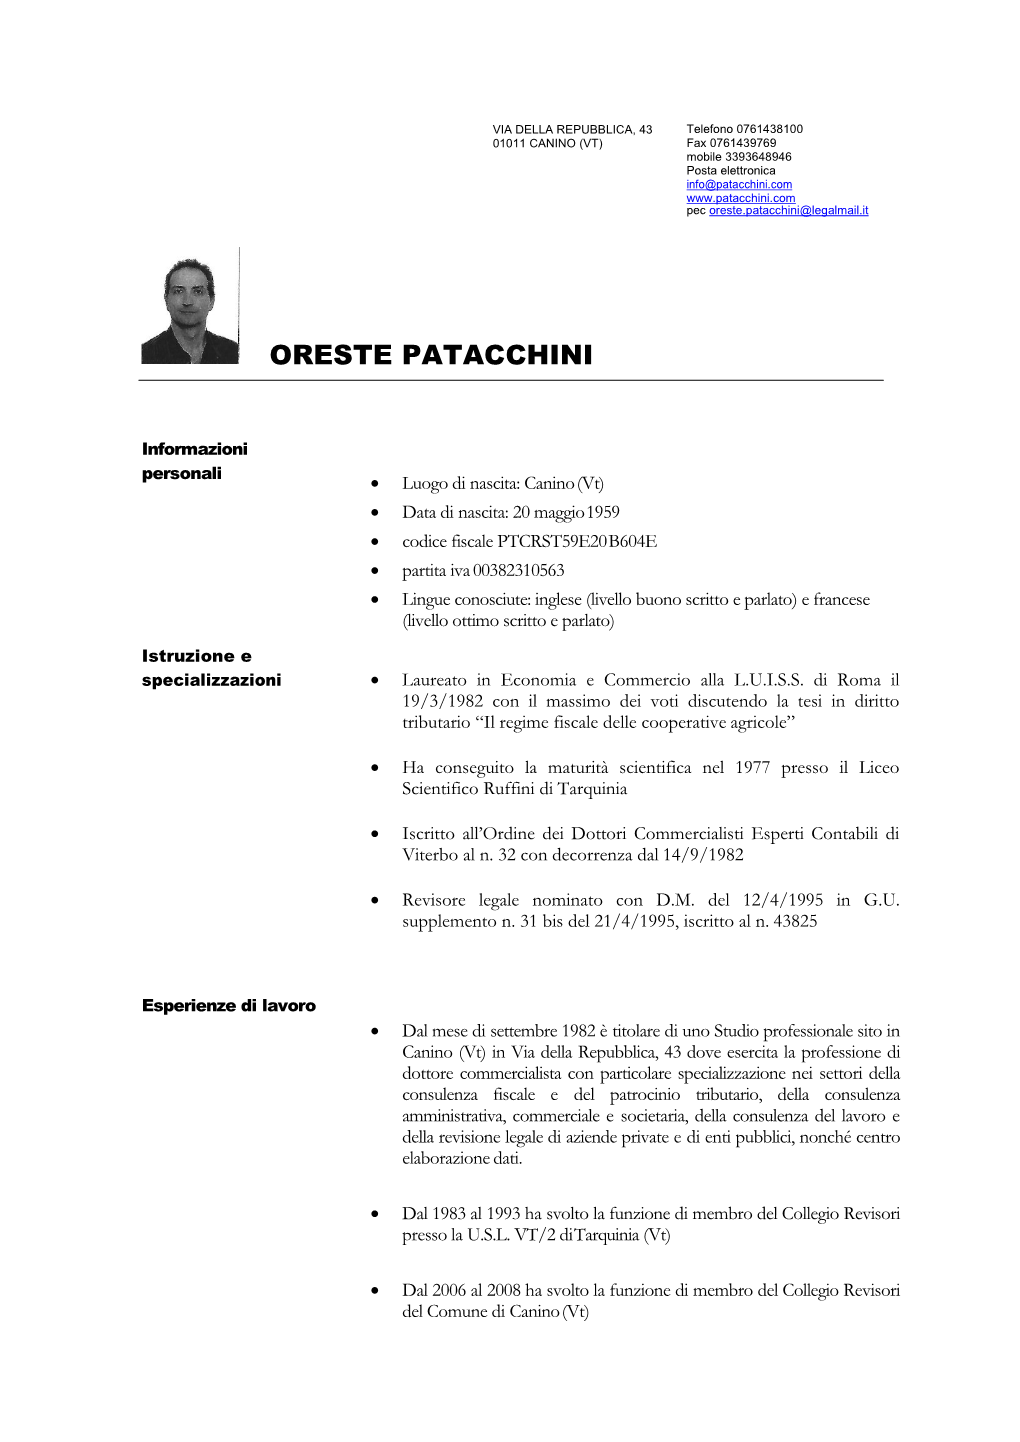 Curriculum Vitae Dott. PATACCHINI Oreste